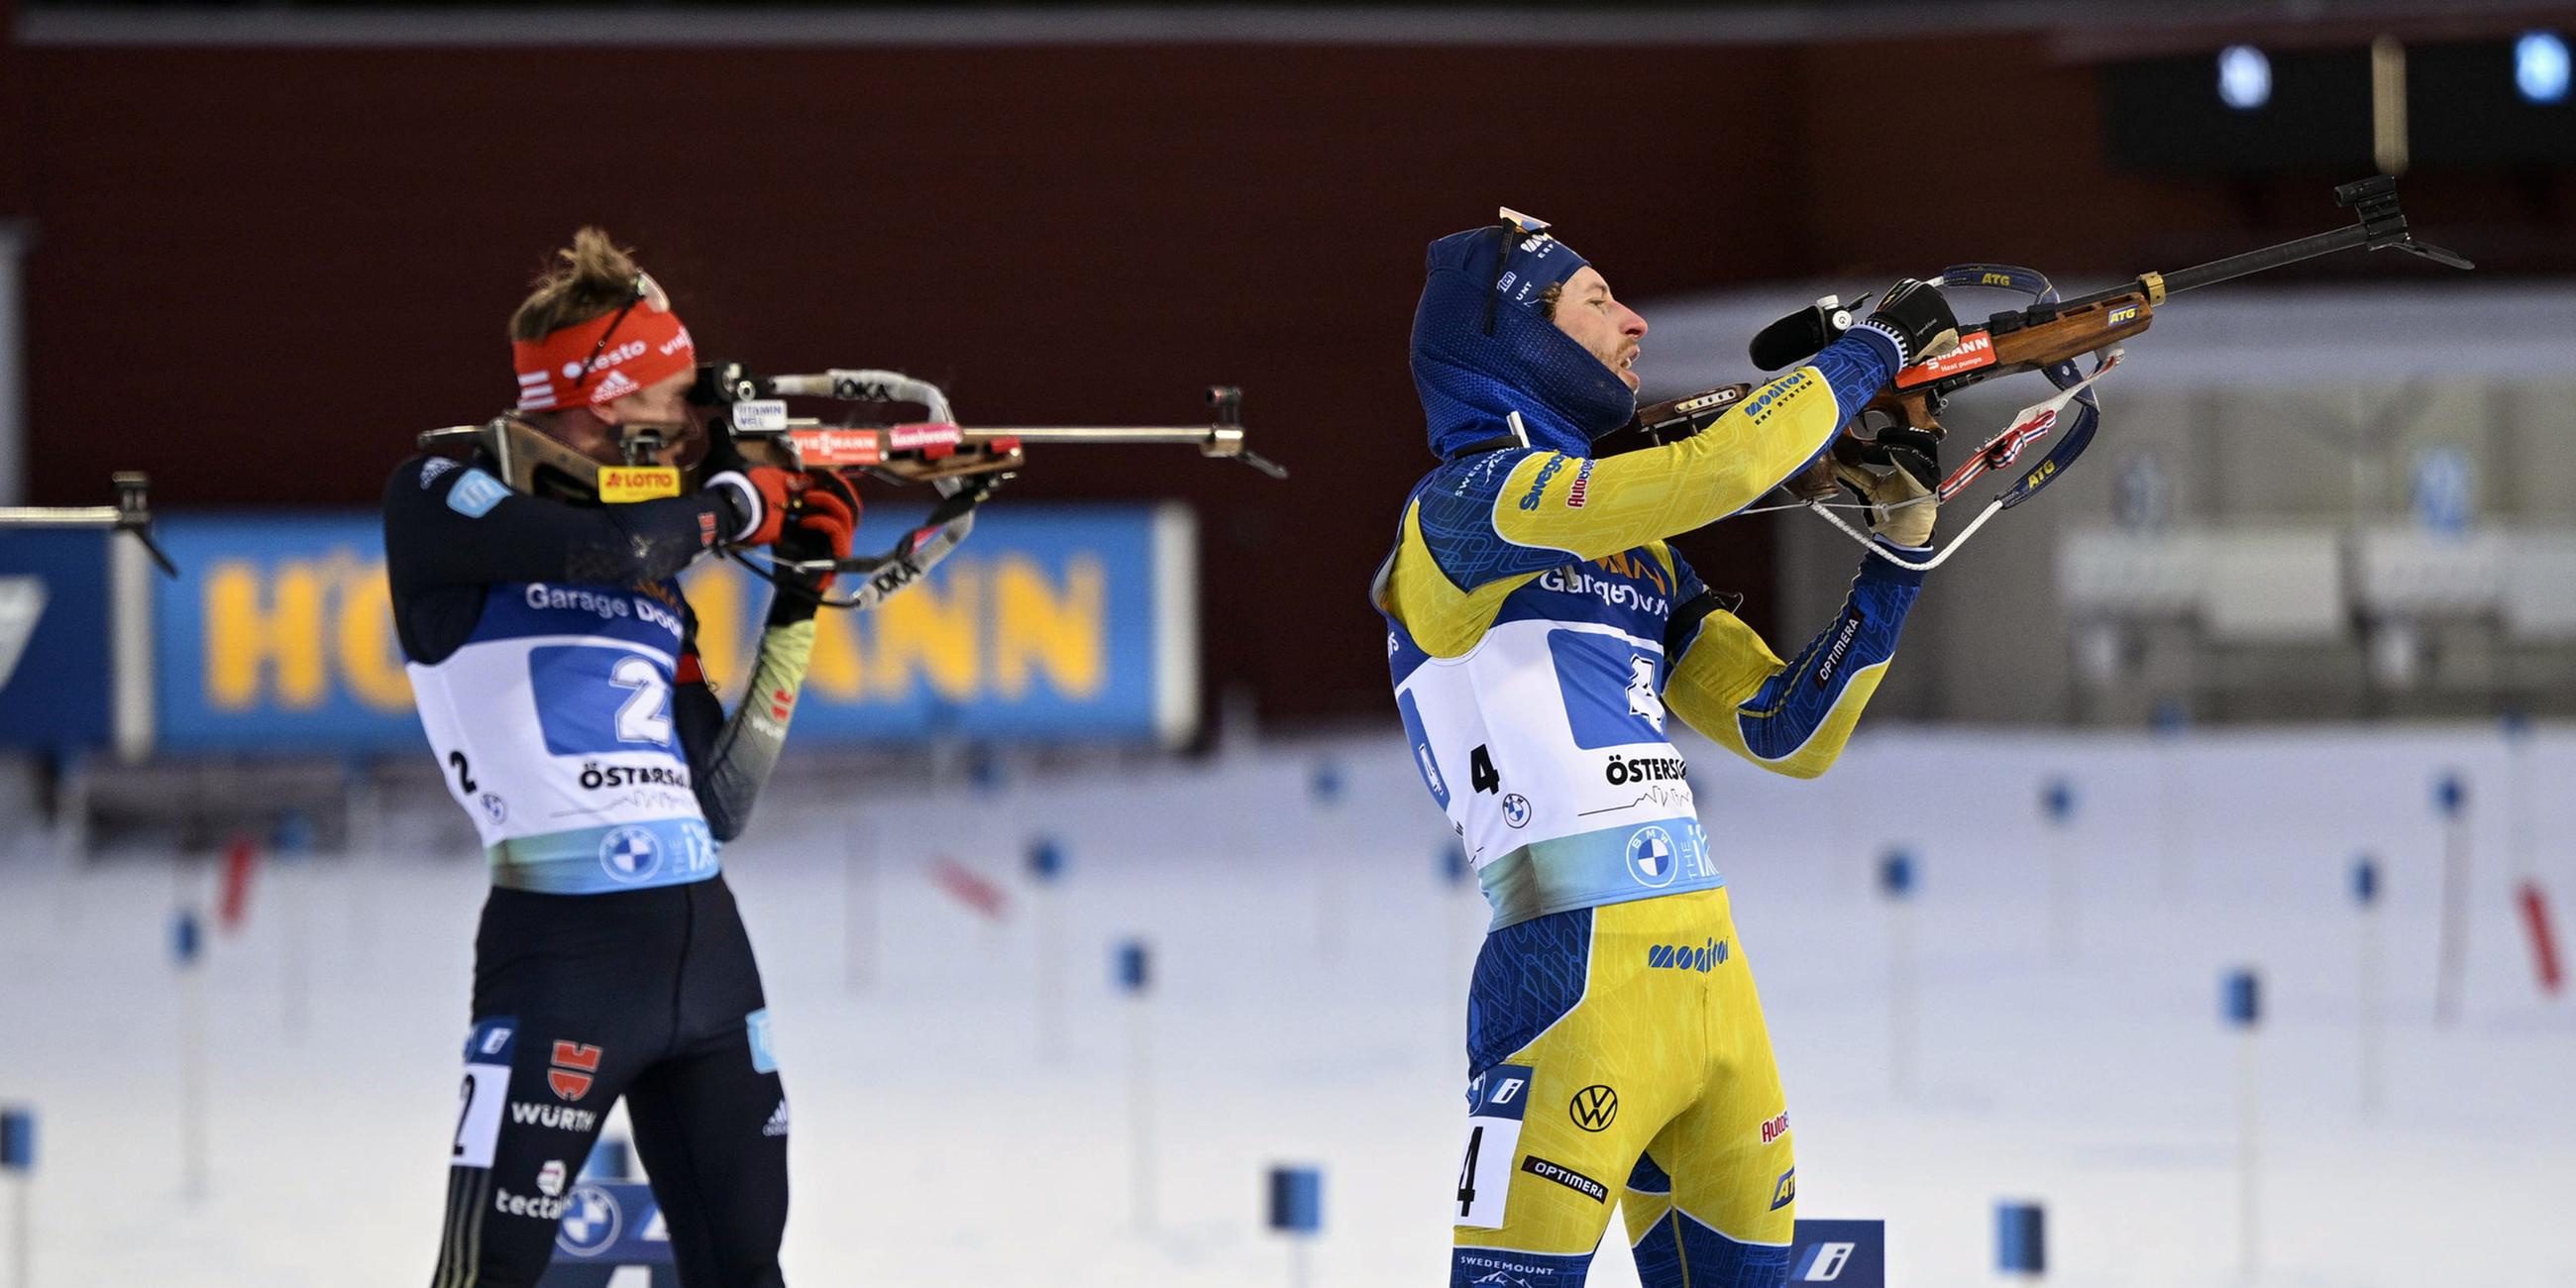 11.03.2023, Östersund, Schweden: Peppe Femling (Schweden) und Benedikt Doll (Deutschland) beim letzten Schießen